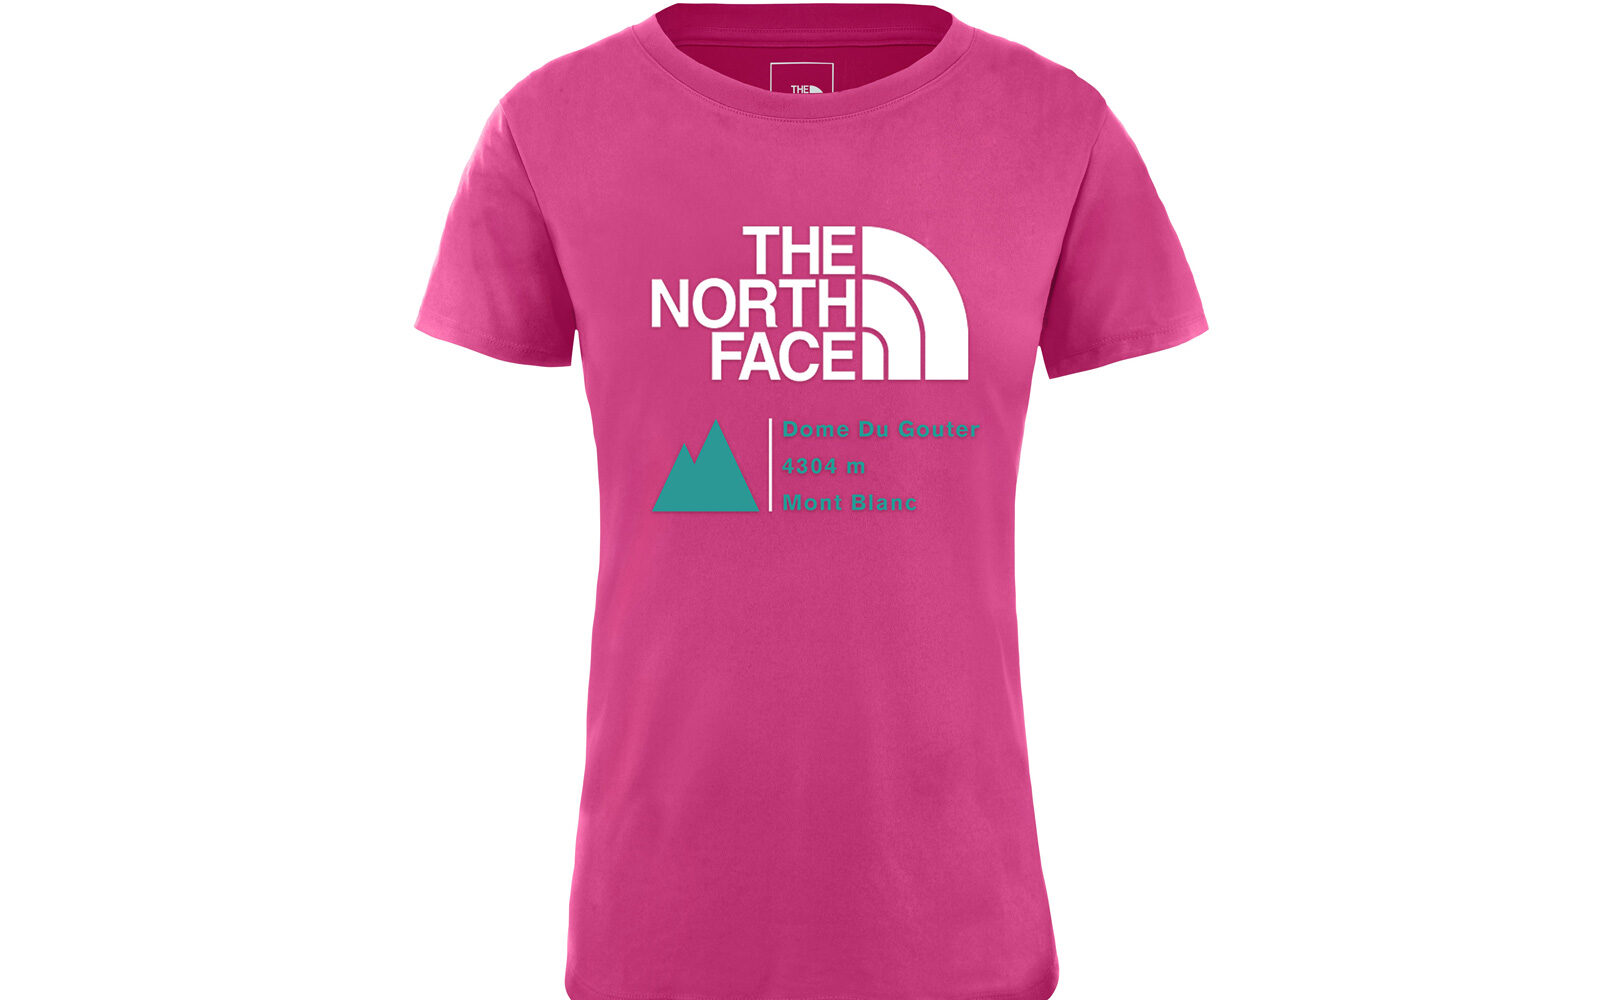 The North Face Glacier T-shirt, realizzata con materiali riciclati e dotata di tecnologia FlashDry per disperdere l’umidità. Euro 45